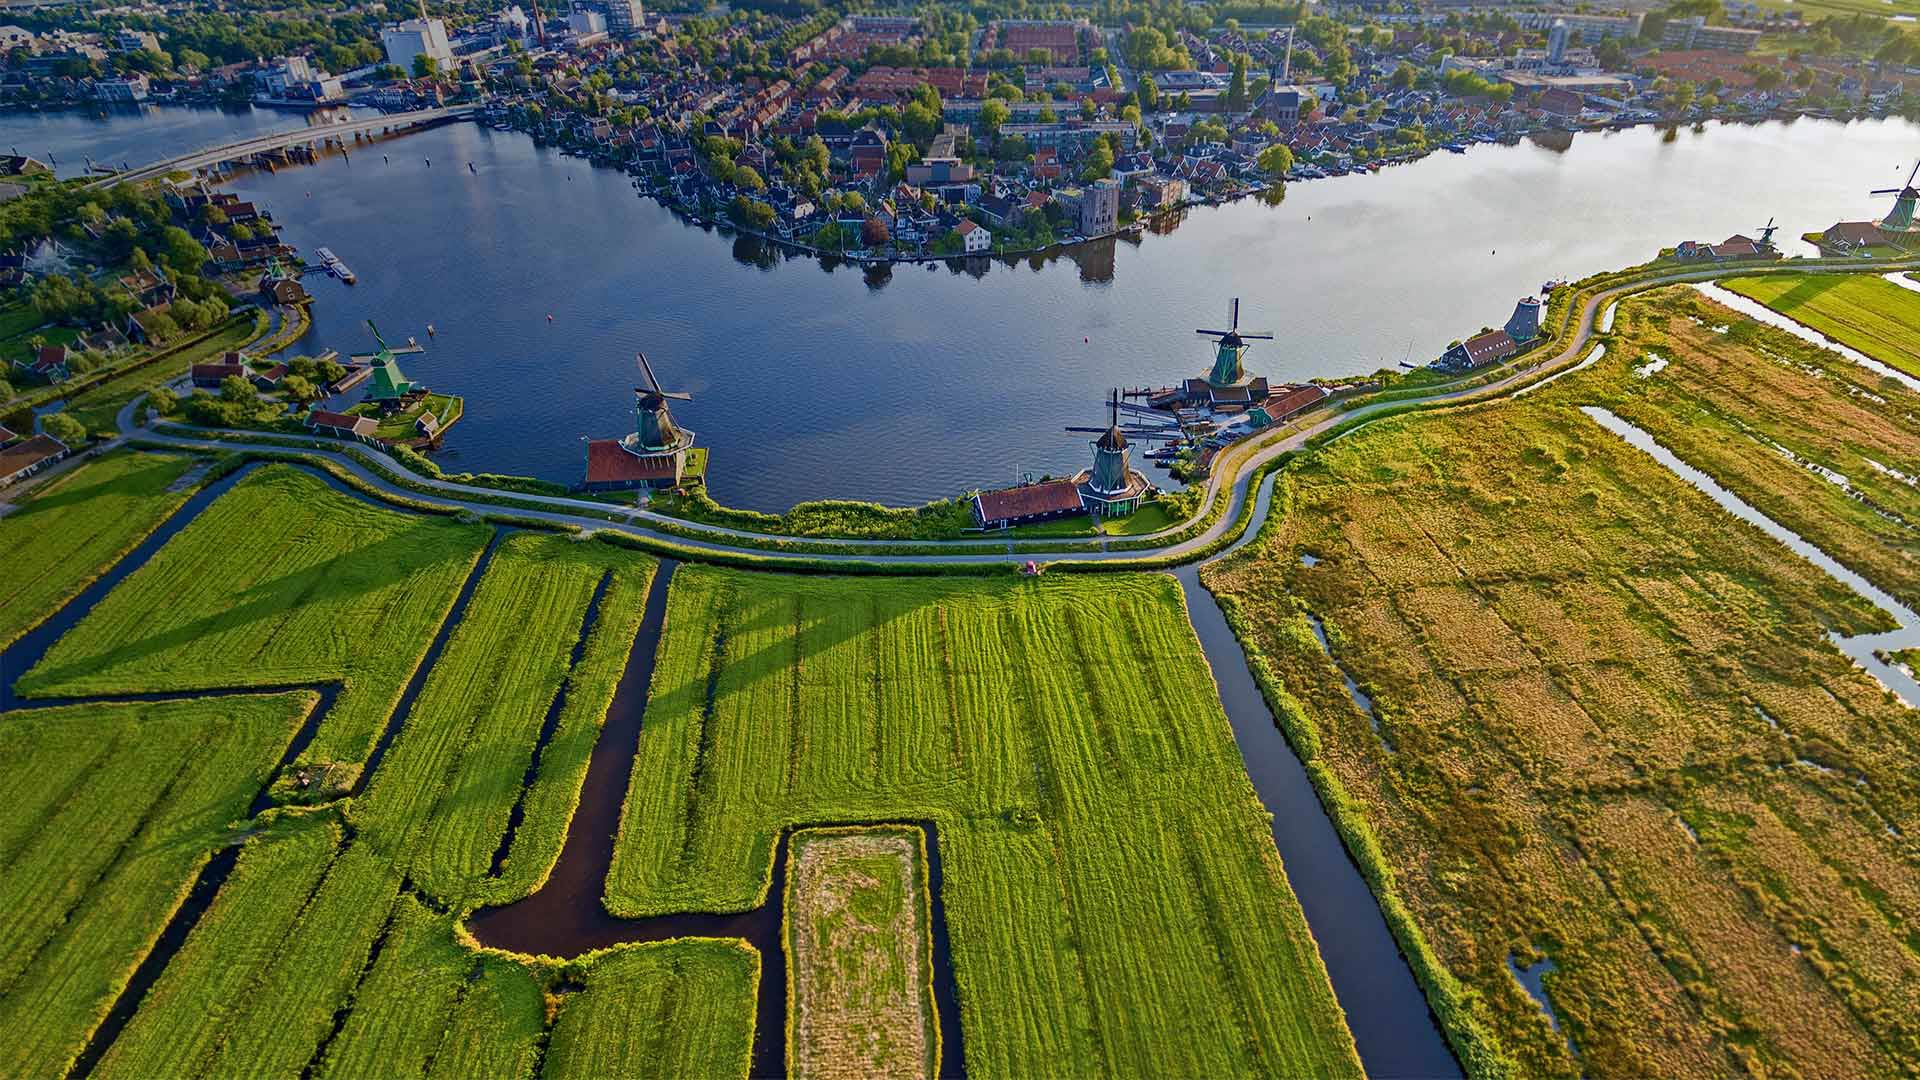 ｢ザーンセスカンス風車村｣オランダ, アムステルダム近郊 ・ Bing日替わり画像